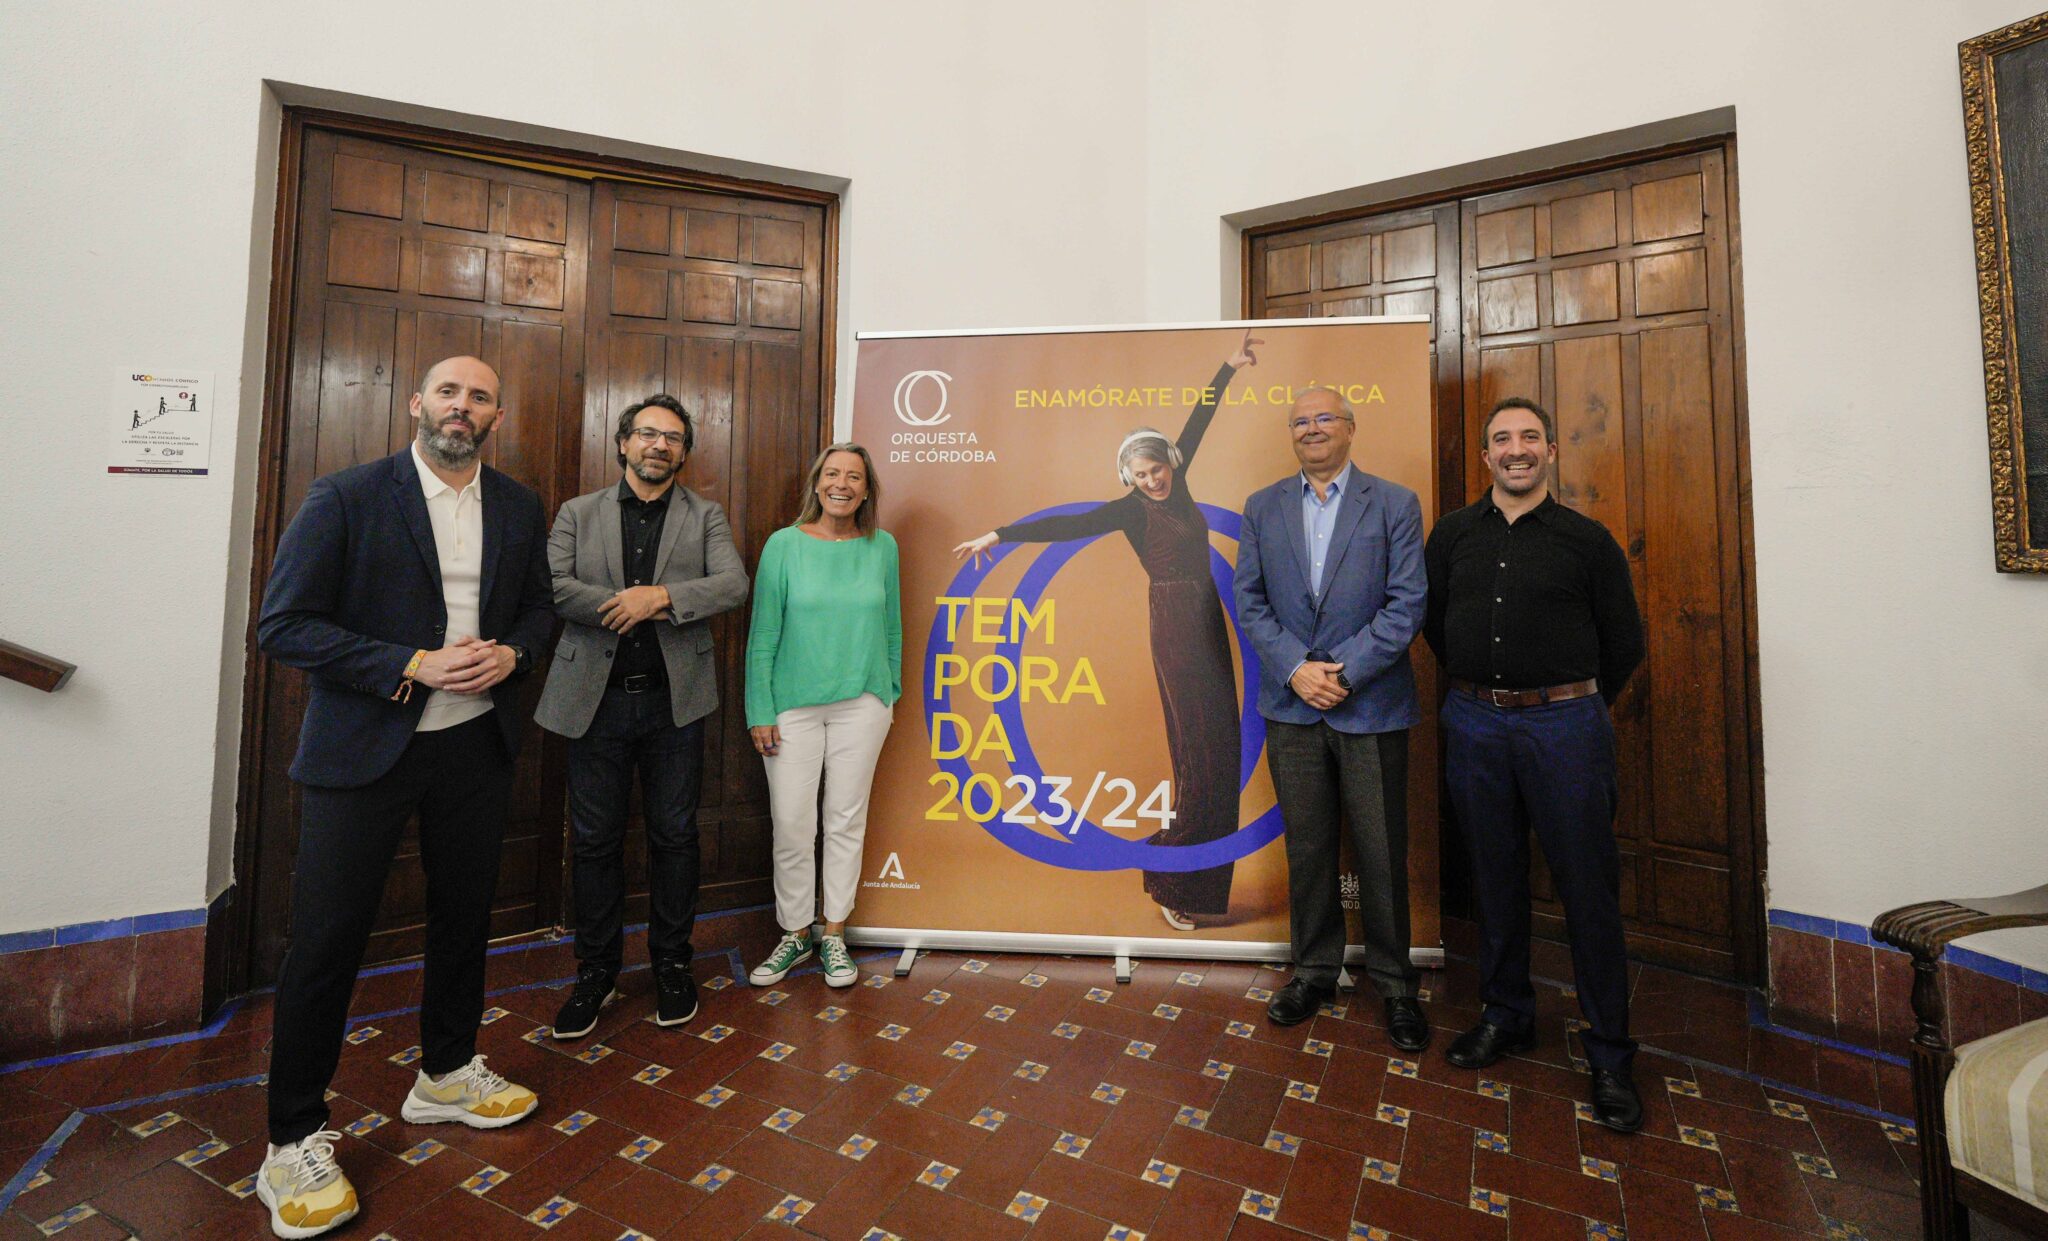 La Orquesta de Córdoba presenta la temporada 2023-24, “enamórate de la clásica”